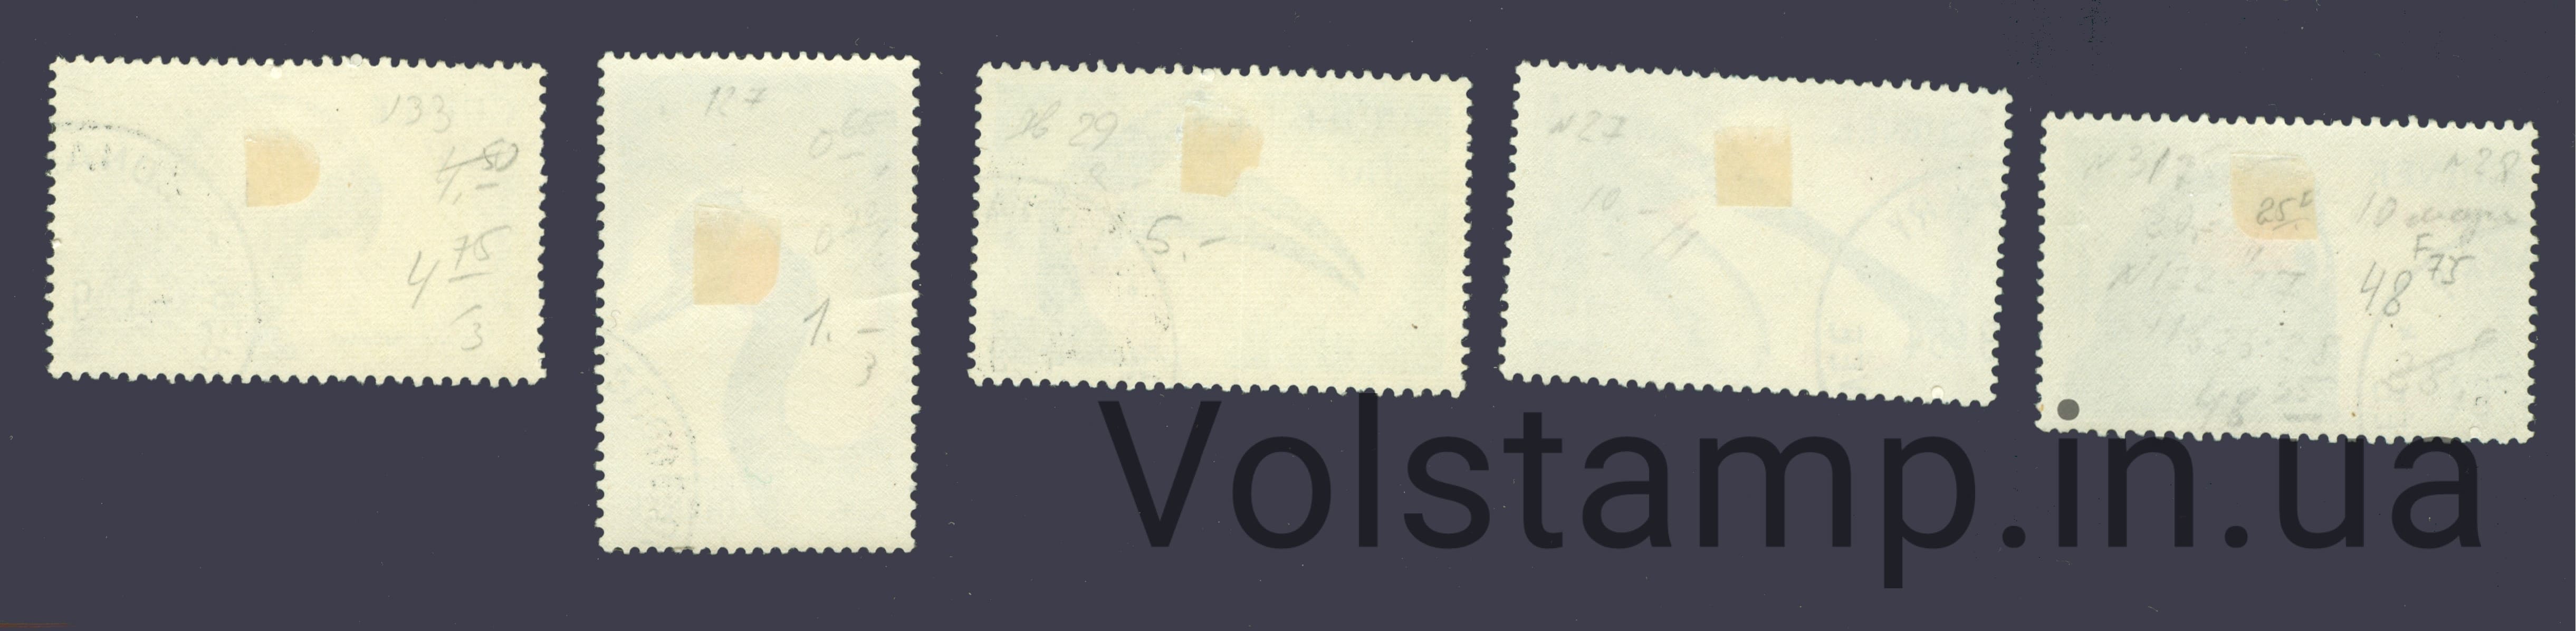 1962 Гвинея Не полная серия марок (Птицы) Гашеные с наклейкой №154 158-163